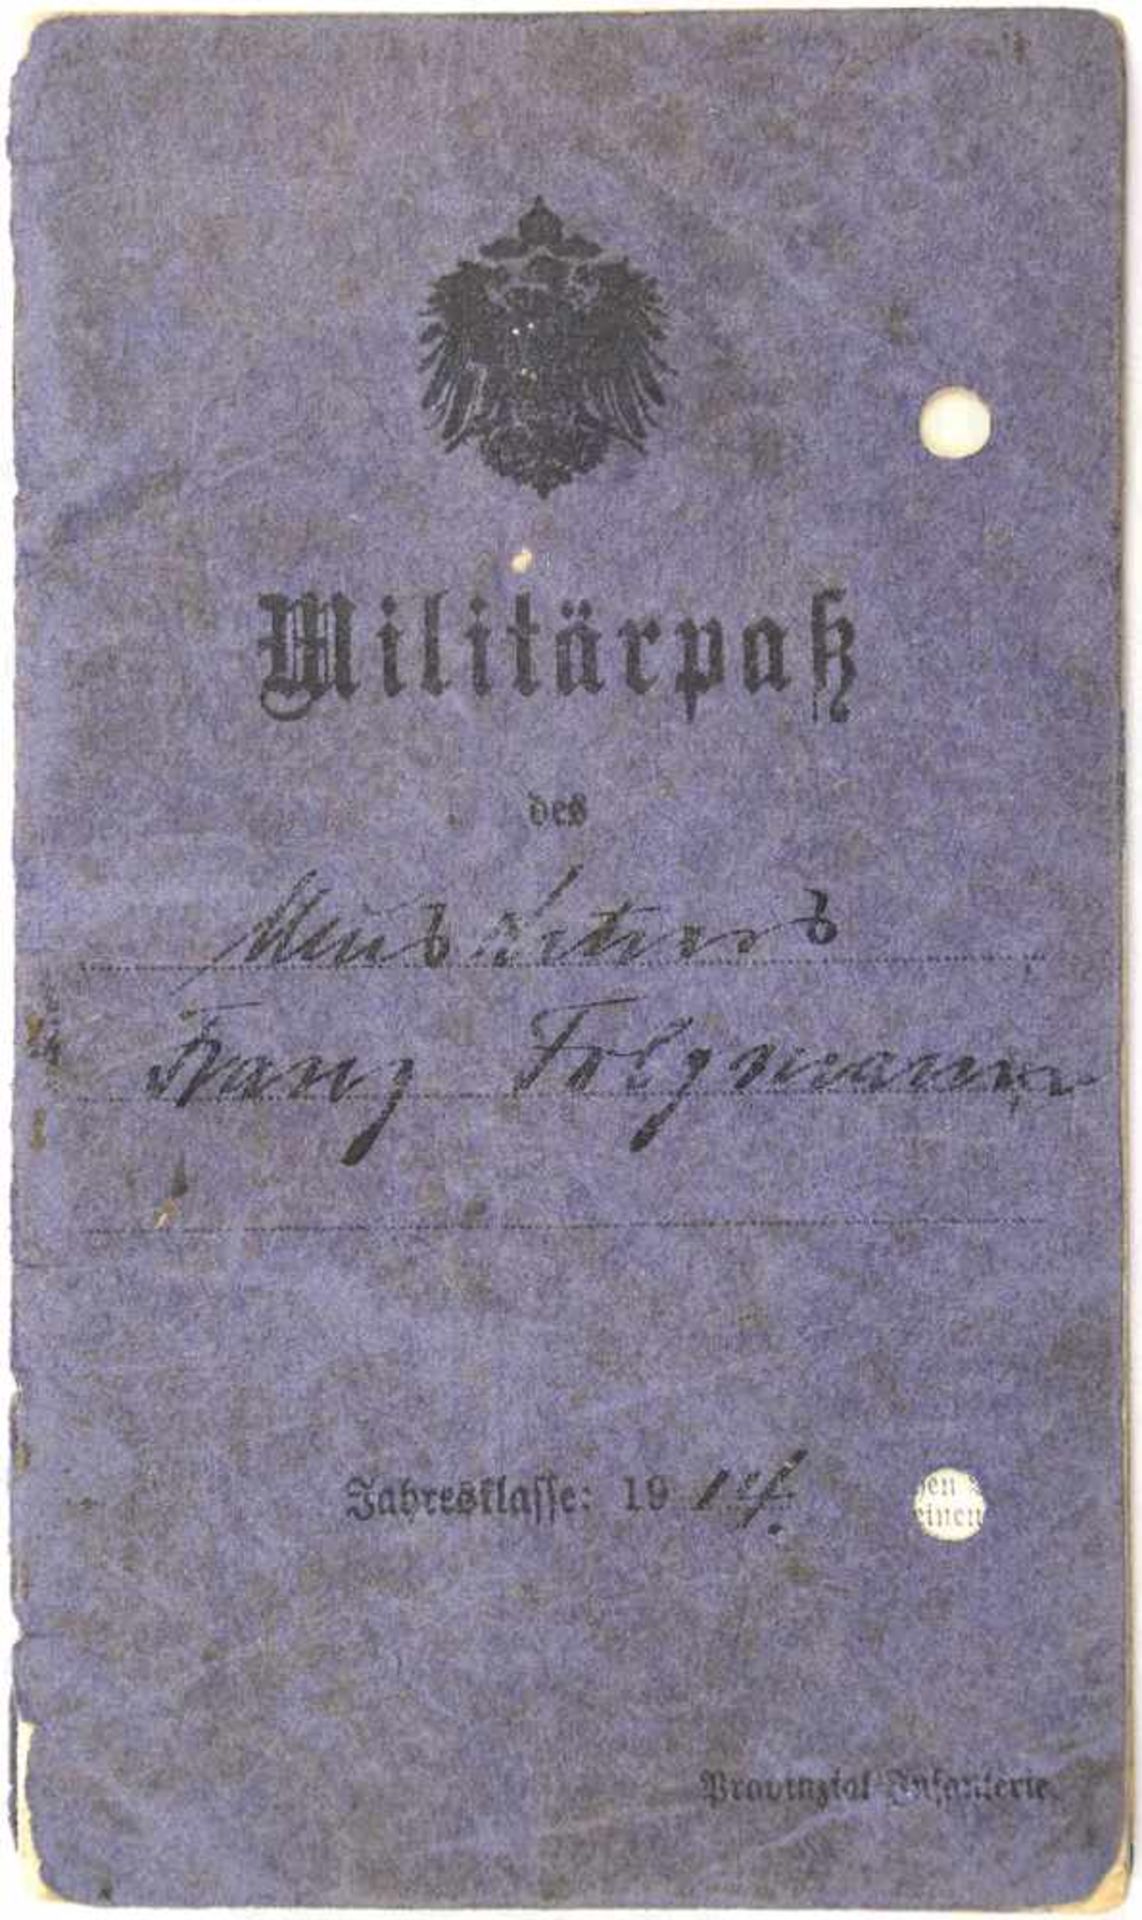 MILITÄRPASS EINES MUSKETIERS, v. Magdeburg. IR Nr. 26 bzw. 66 u. RIR 263, EK II 1914,